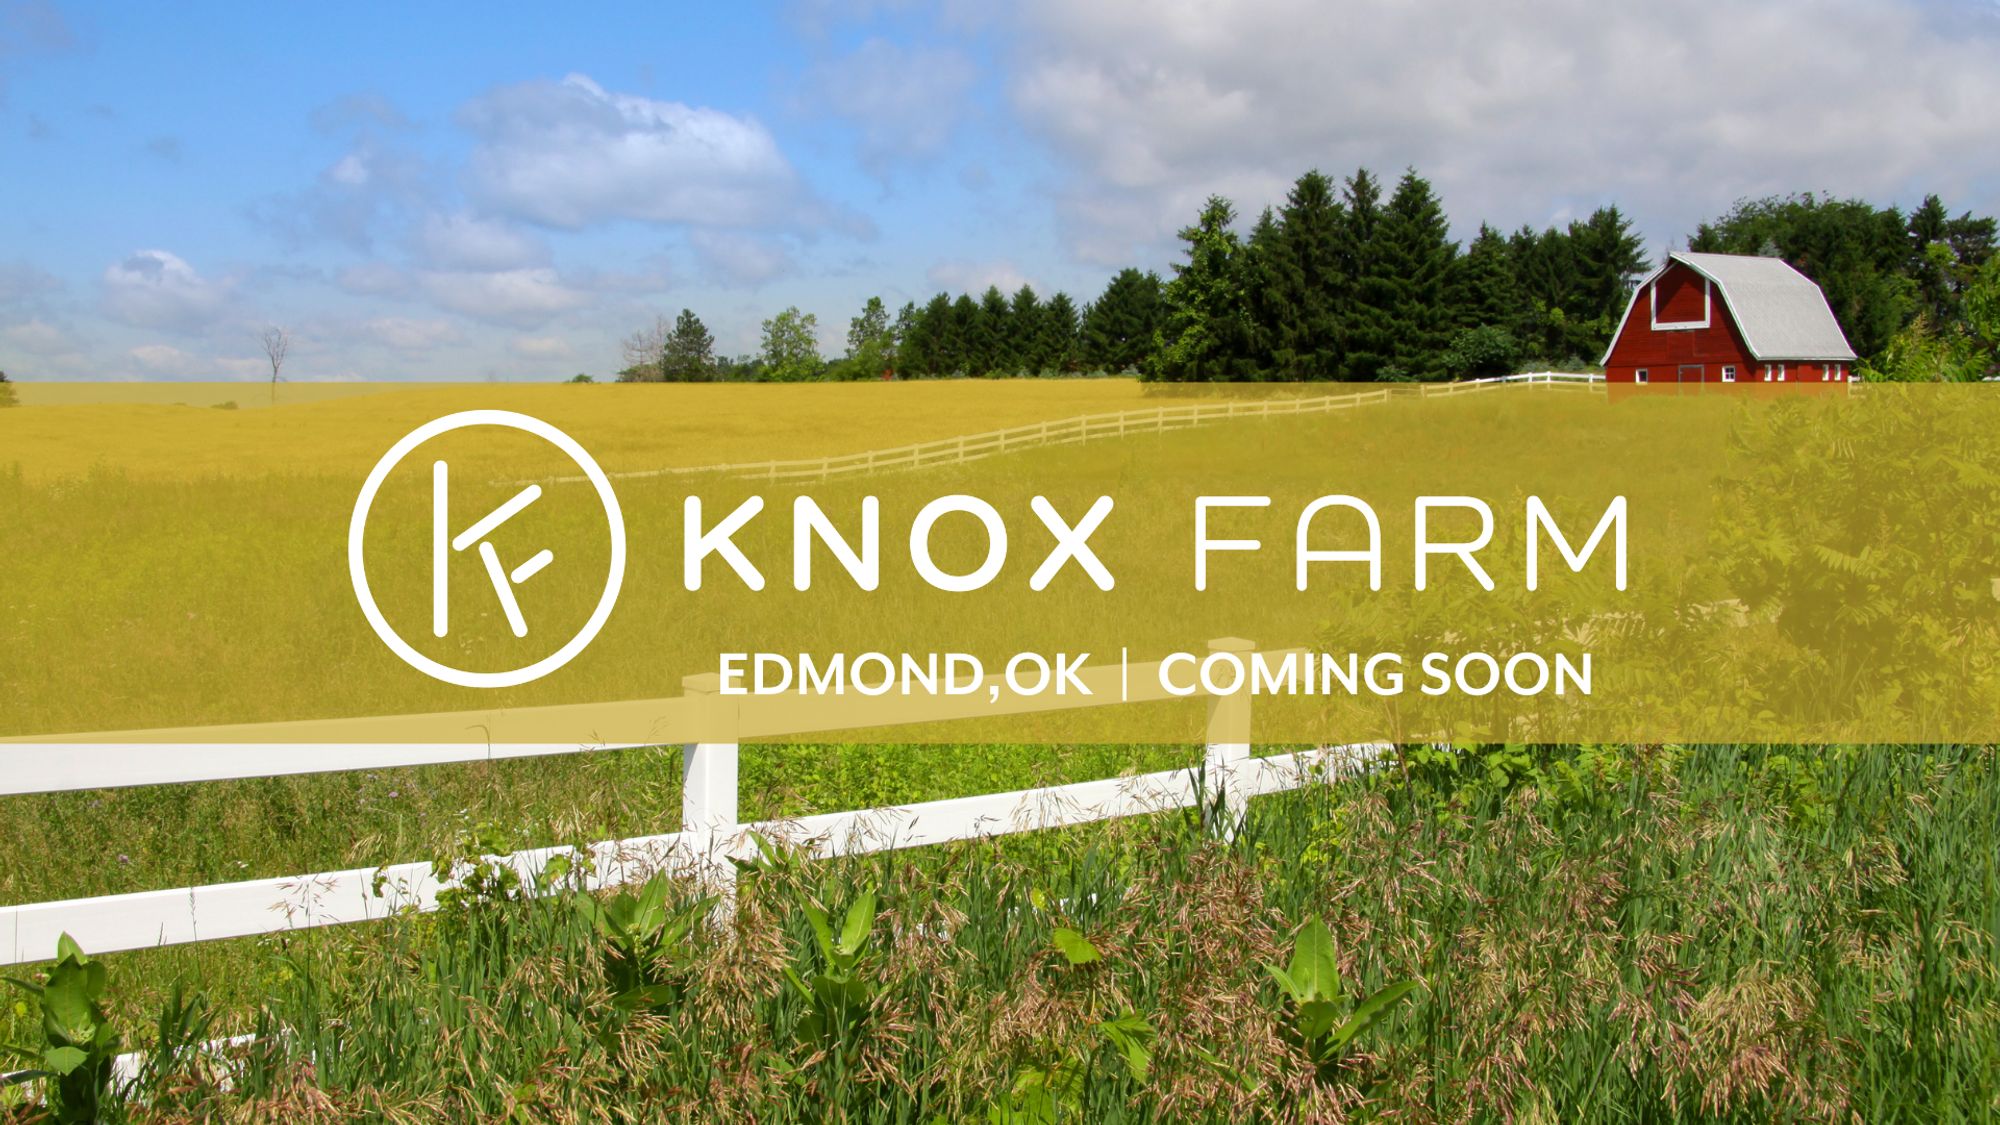  Knox Farm, Edmond, OK, New homes coming soon